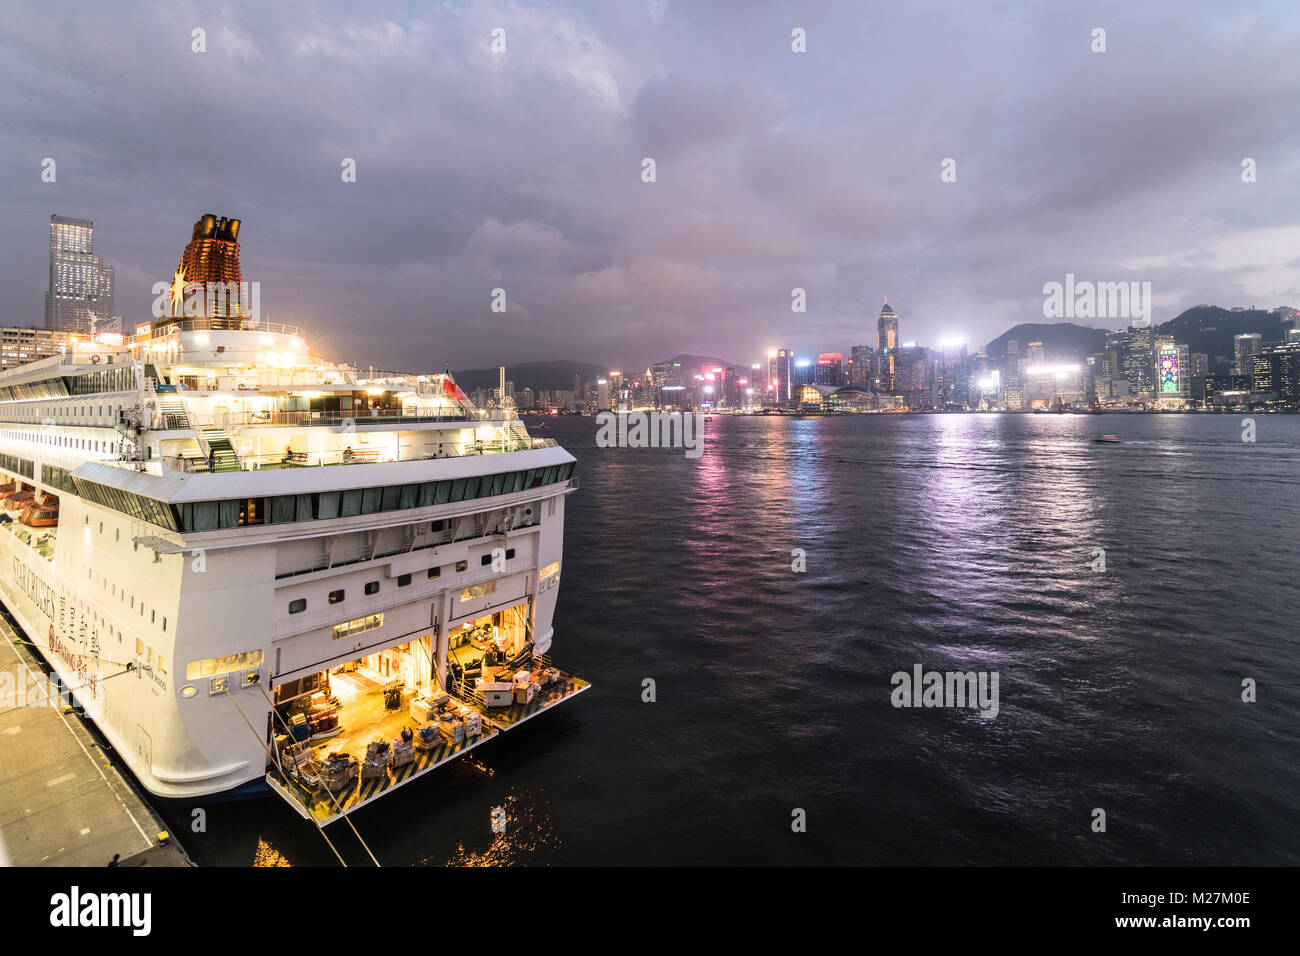 Hong Kong - Le 25 janvier 2018 : un grand bateau de croisière ancrés à l'Ocean Terminal de croisière à Kowloon avec l'île de Hong Kong skyline célèbre dans le dos Banque D'Images